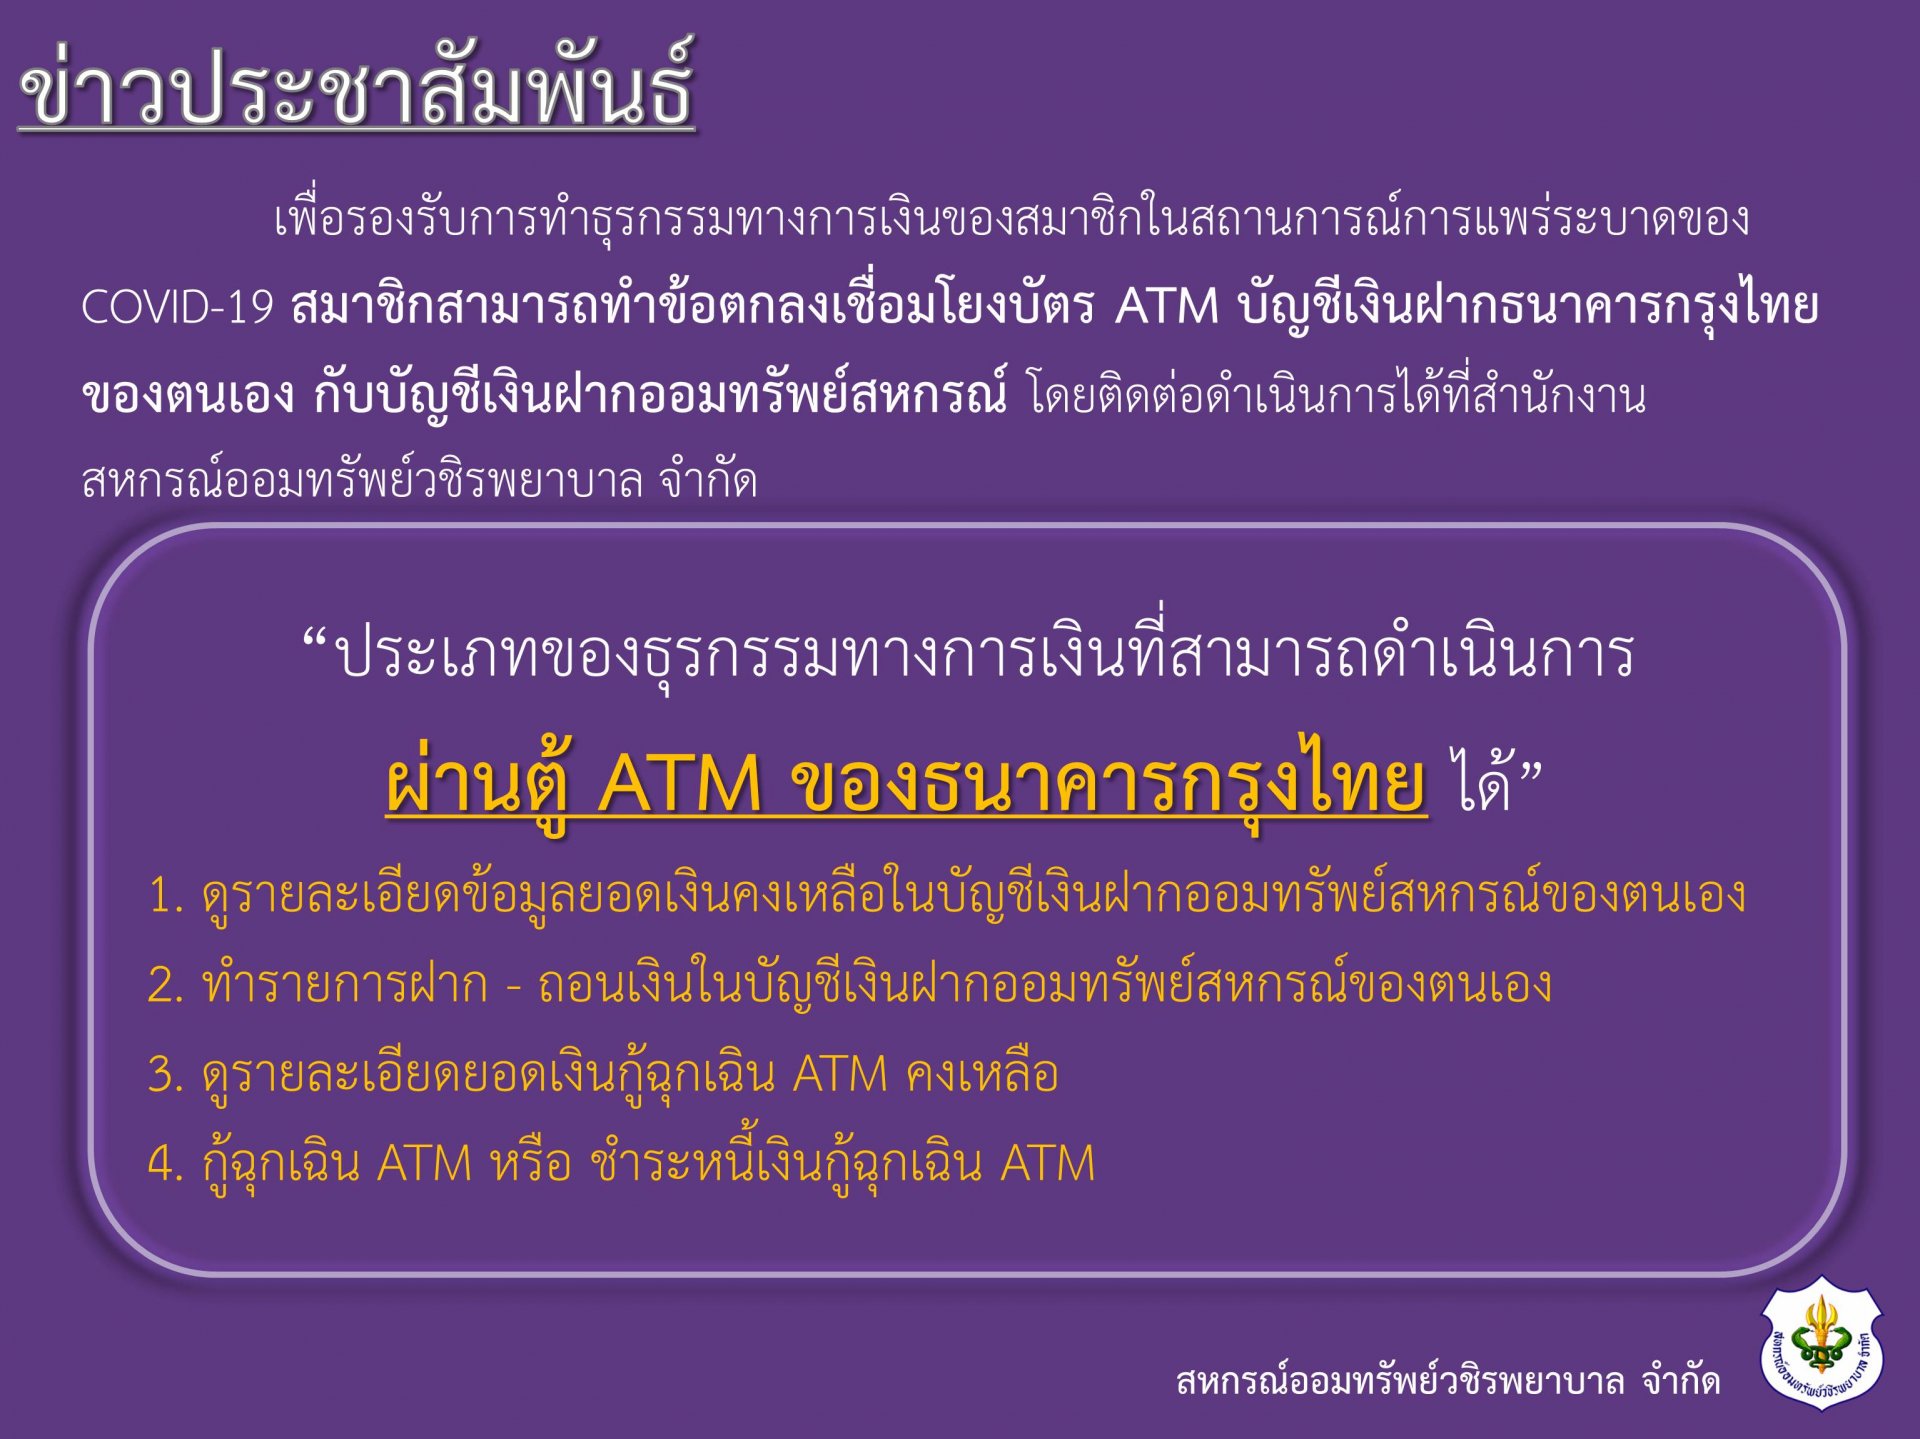 เชิญชวนสมาชิกทุกท่าน ทำข้อตกลงเชื่อมโยมบัตร ATM บัญชีเงินฝากธนาคารกรุงไทยของตนเอง กับบัญชีเงินฝากออมทรัพย์สหกรณ์